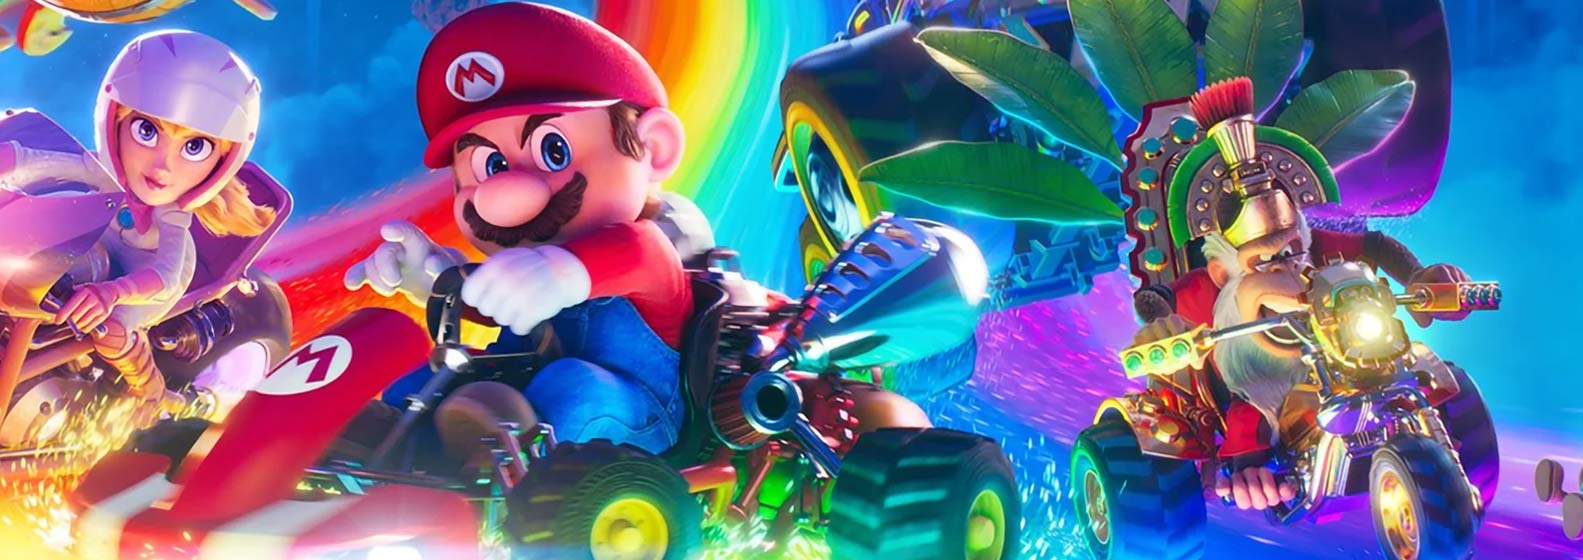 The Super Mario Bros. Movie - Header Image